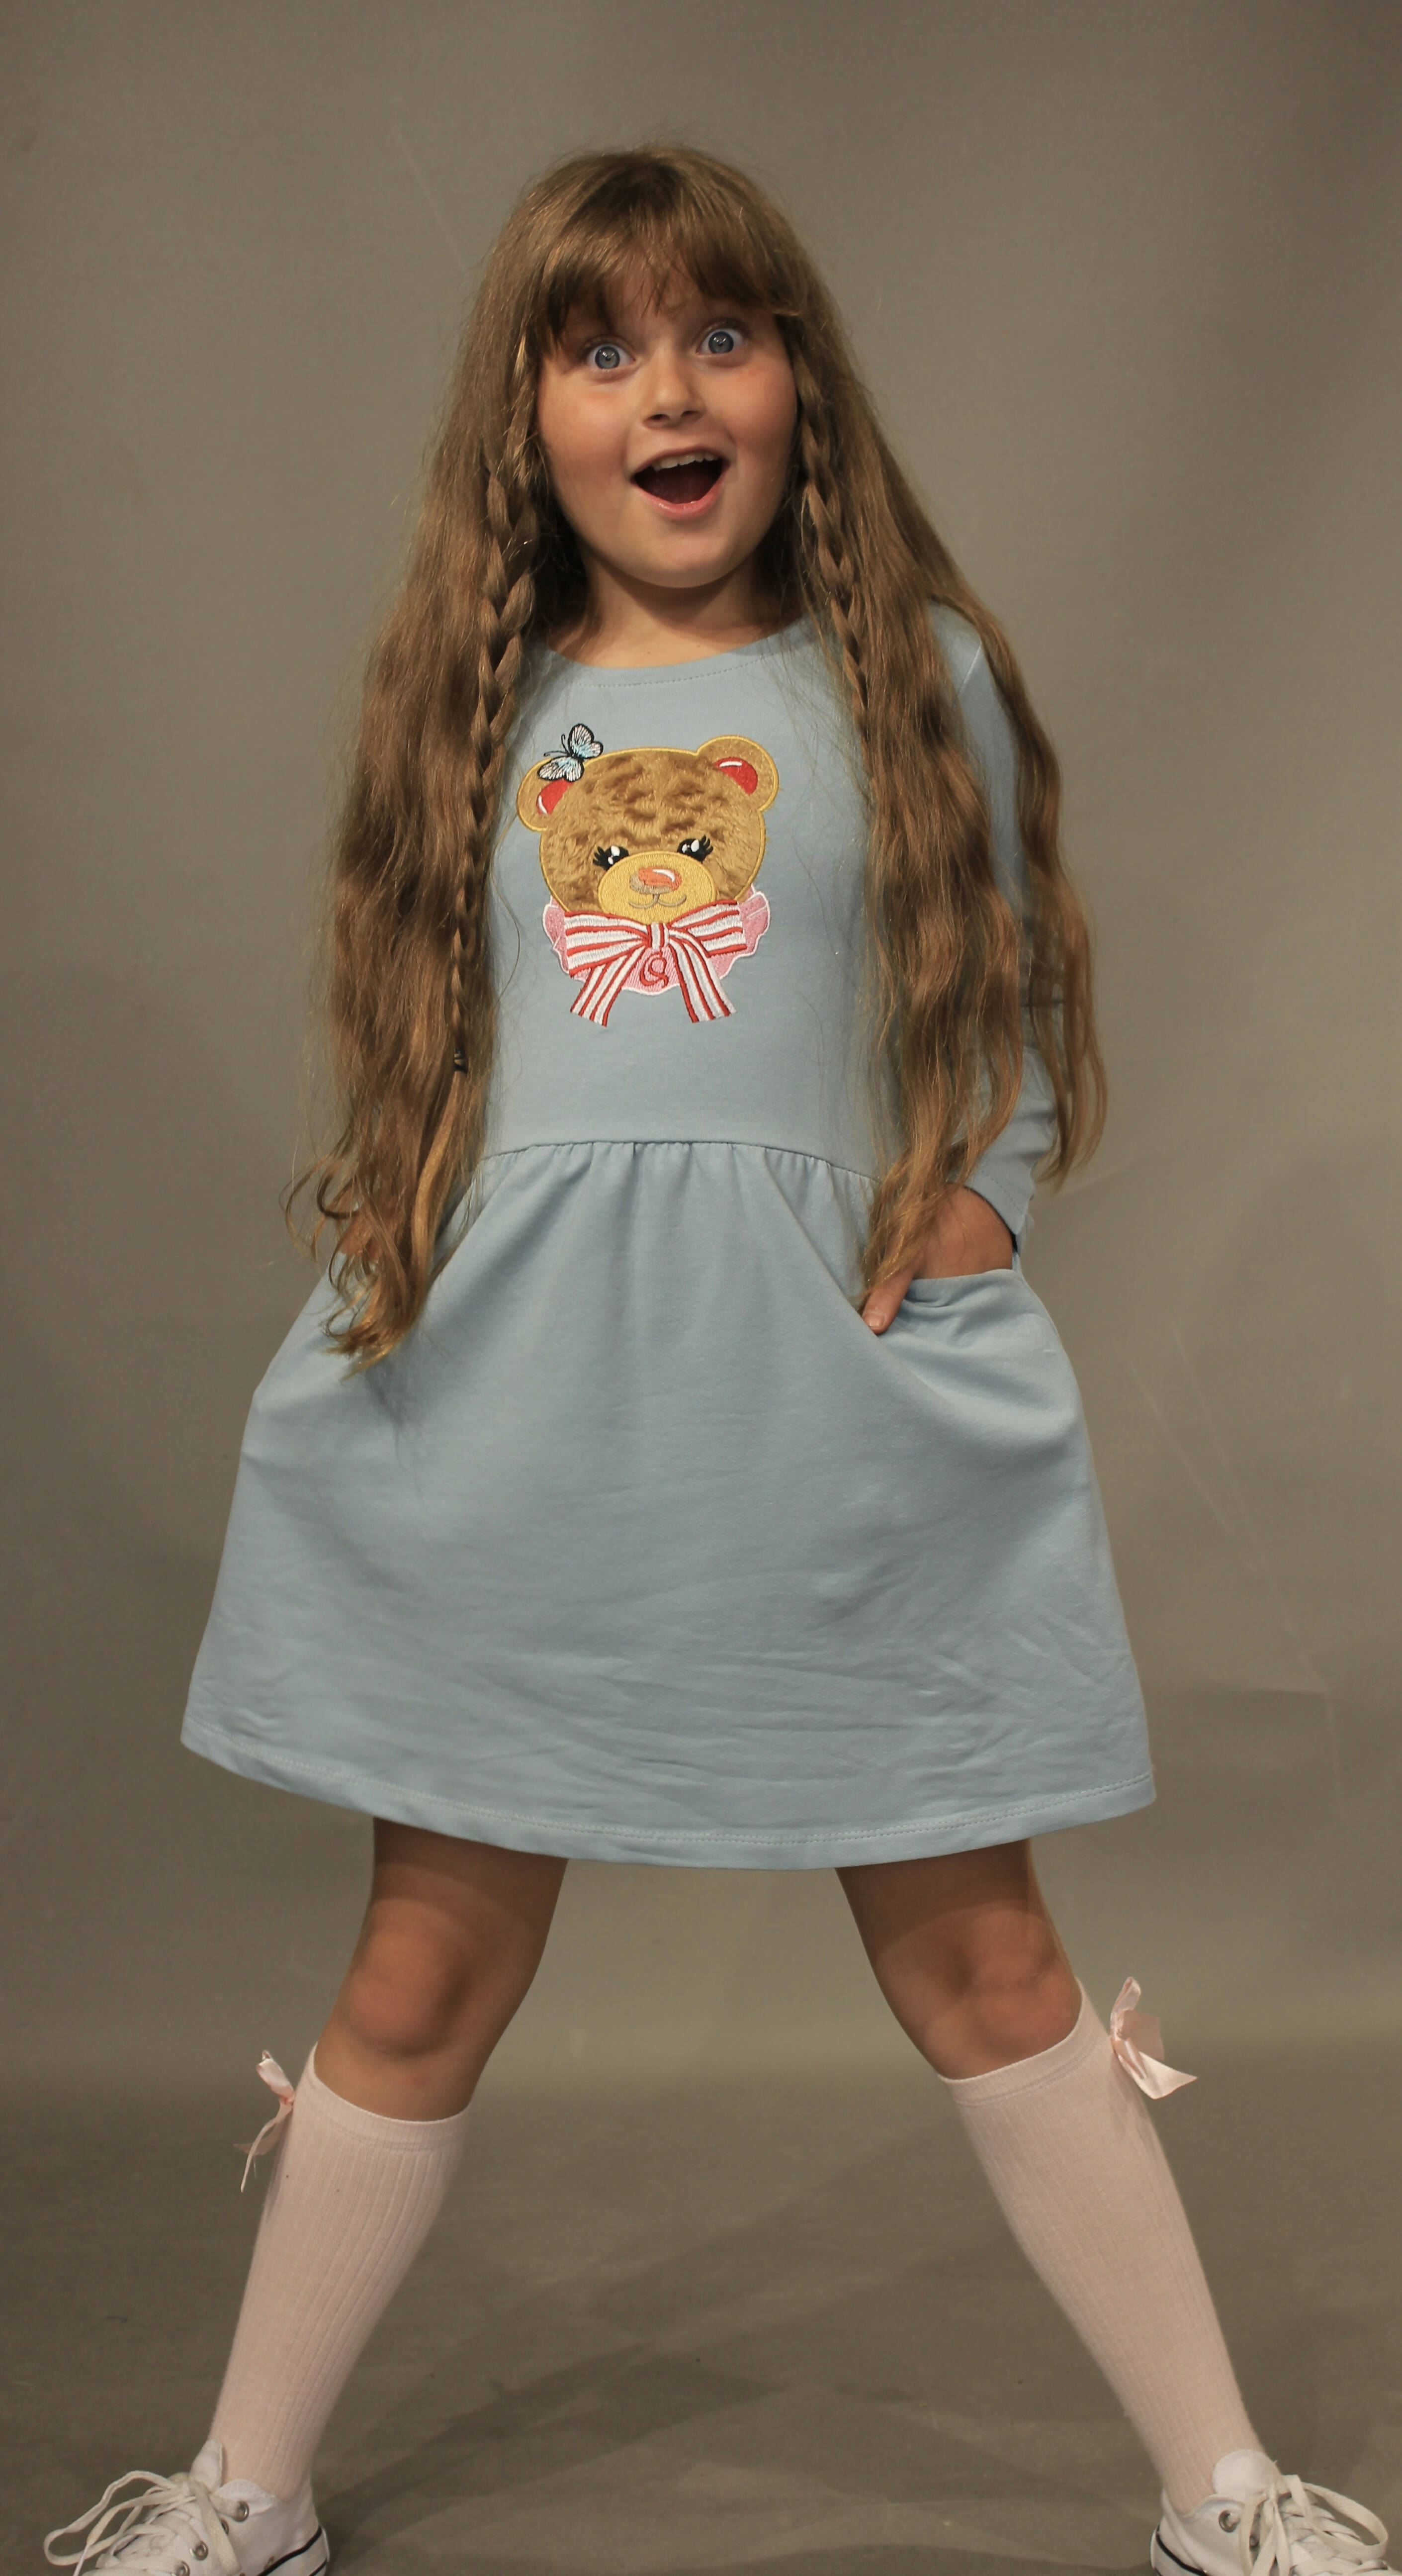 Long Sleeve Girl's Dress with Soft Fur Bear Applique - Wear Sierra